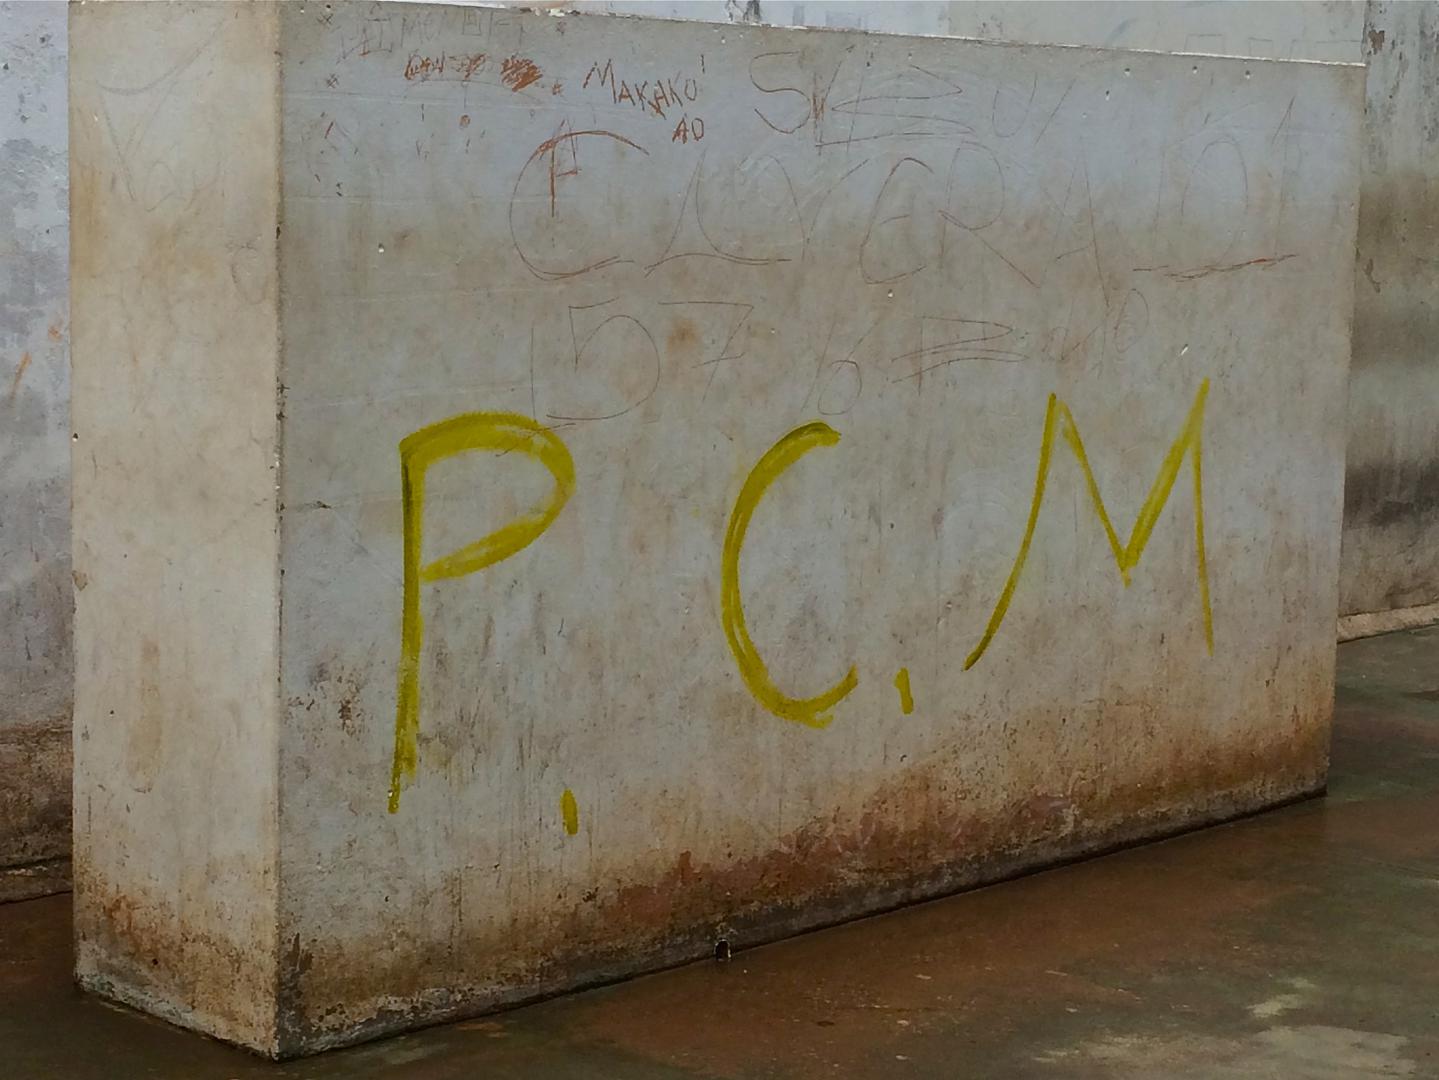 Tagging by Primeiro Comando do Maranhão (Maranhão´s First Command, PCM) gang inside the Pedrinhas prison complex.